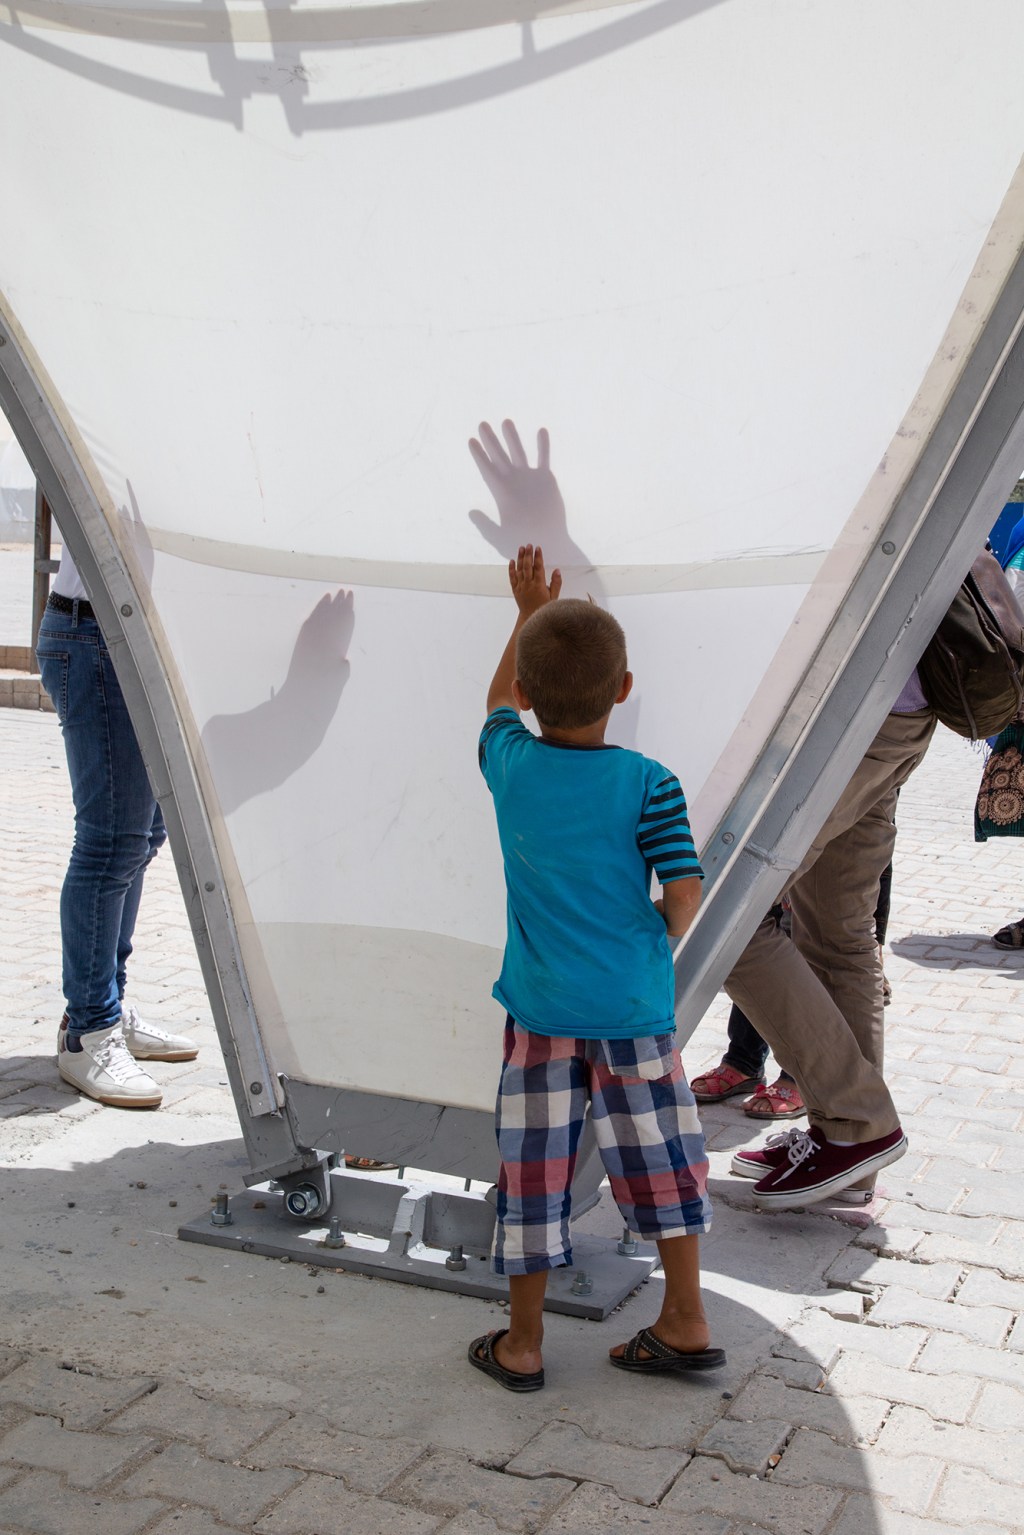 Tendas projetadas por Zaha Hadid Architects viram abrigos e escolas para refugiados